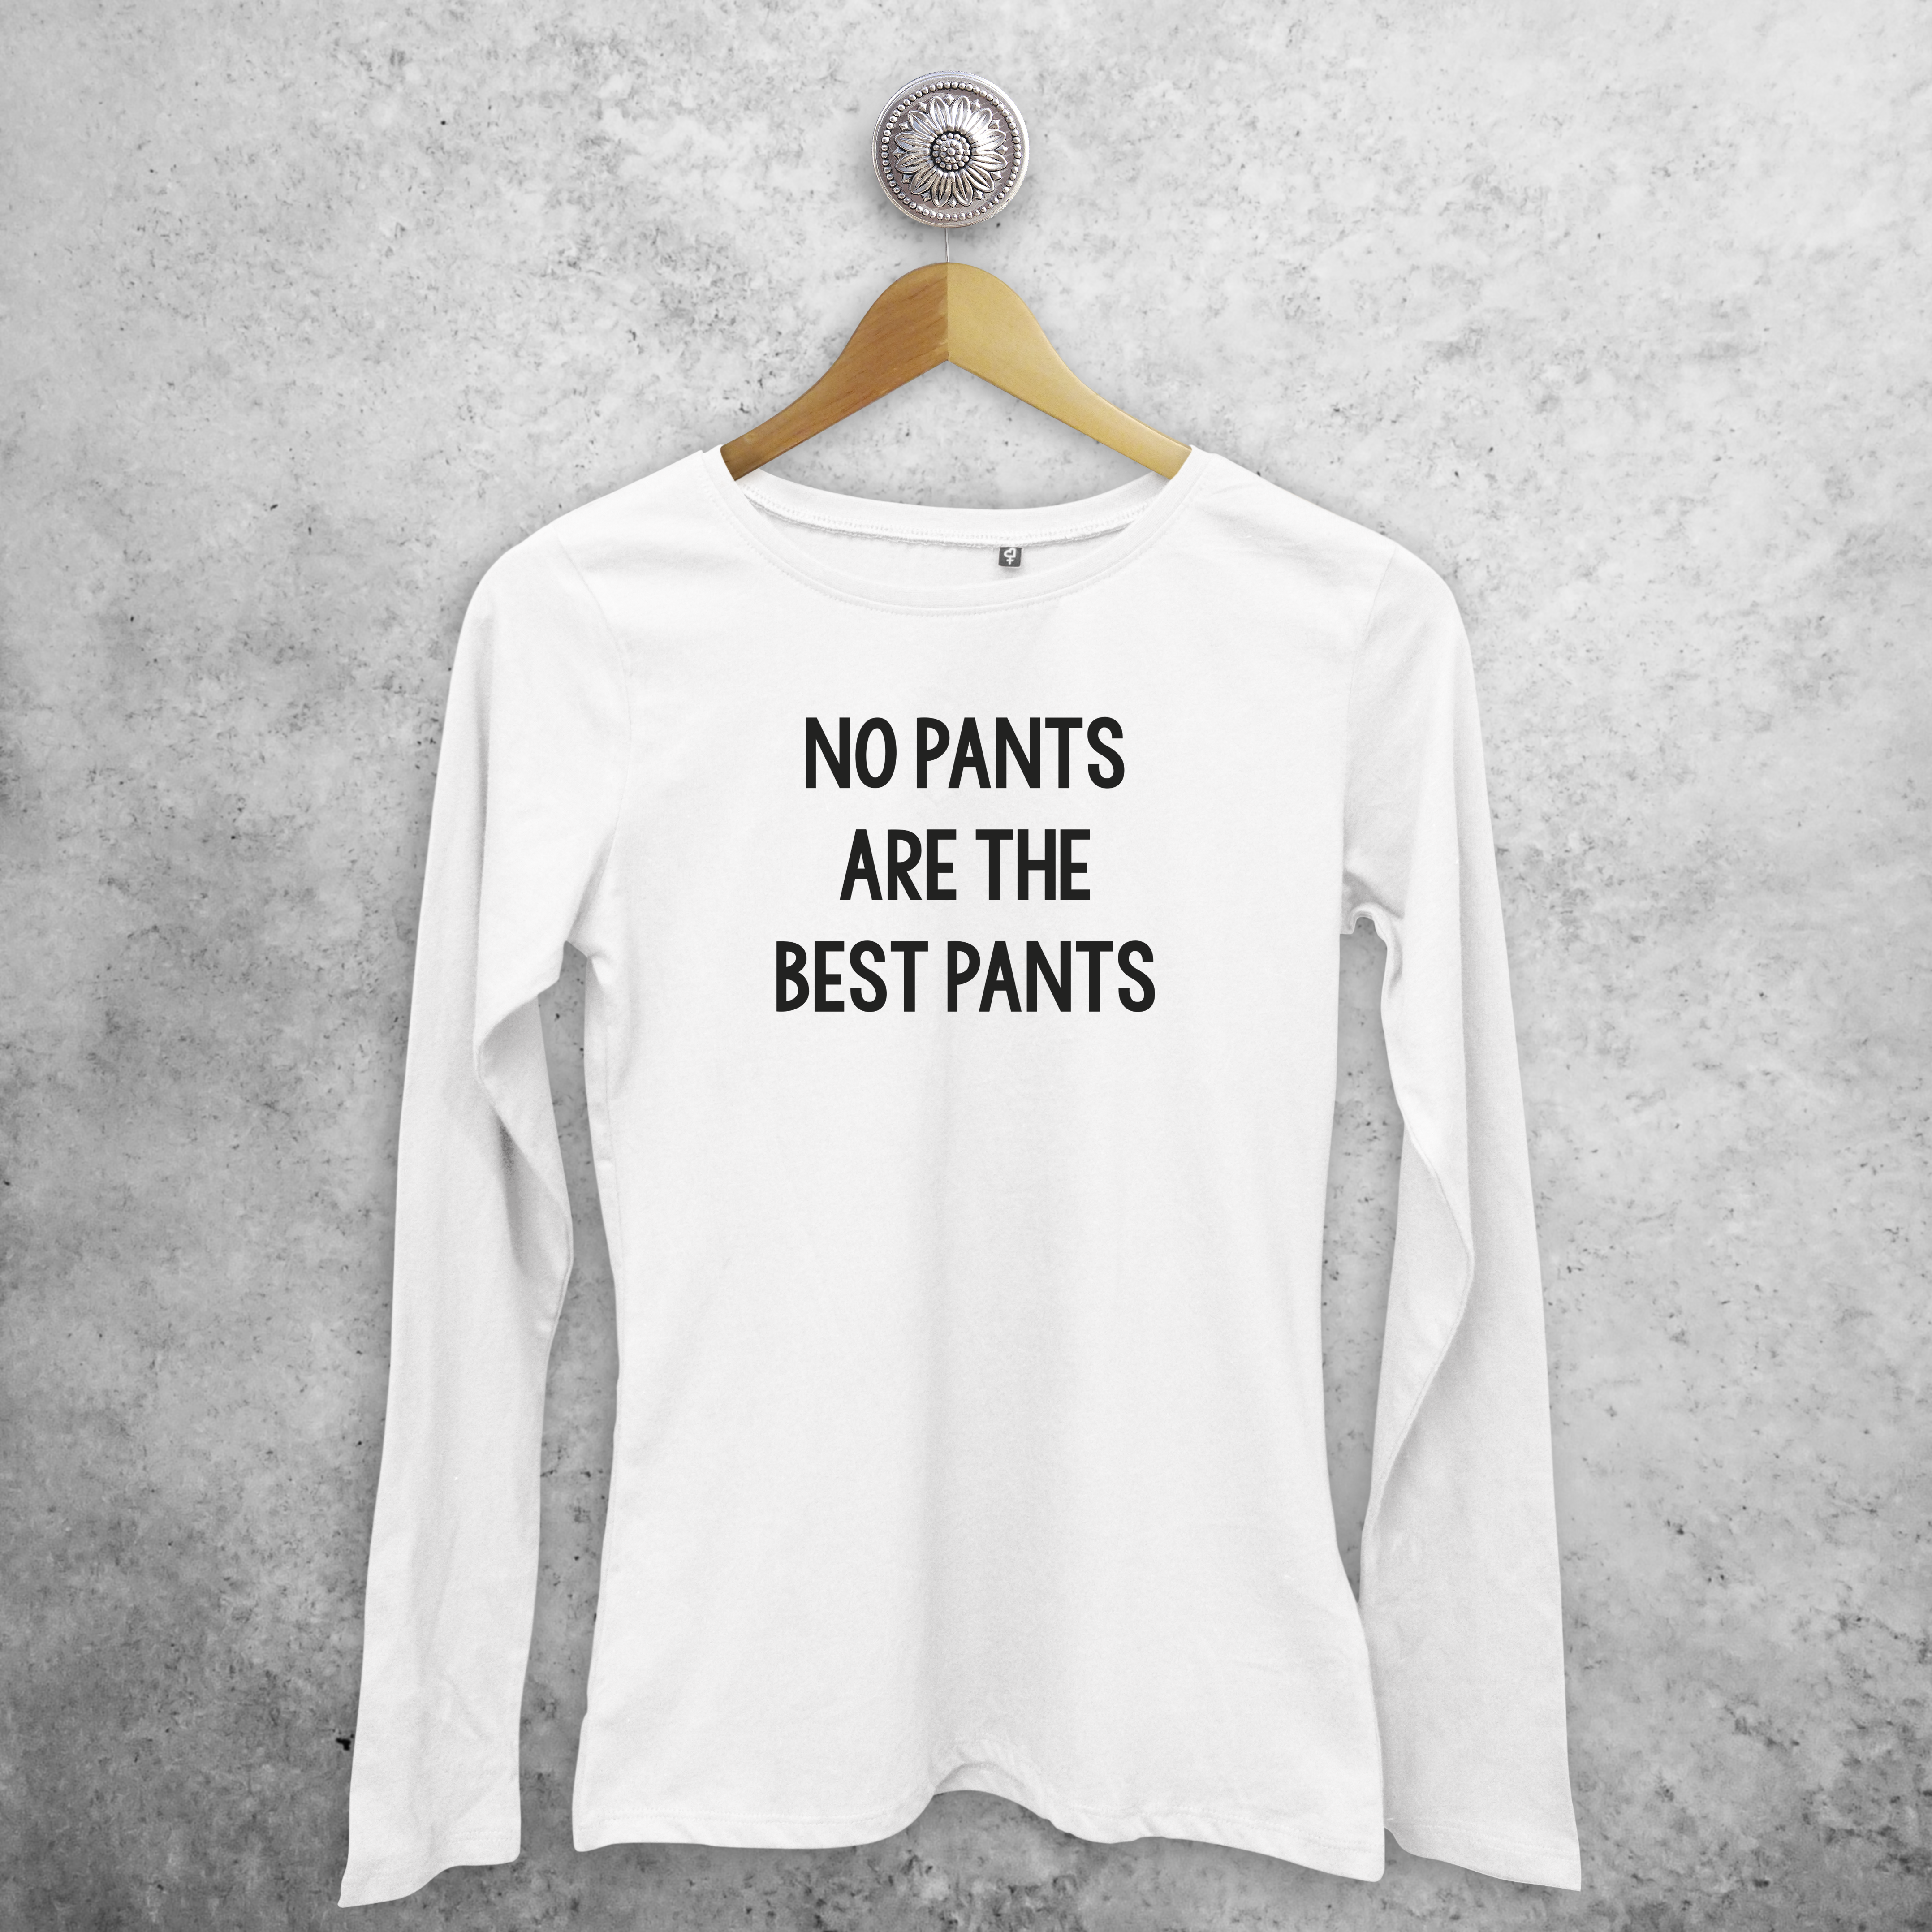 'No pants are the best pants' volwassene shirt met lange mouwen